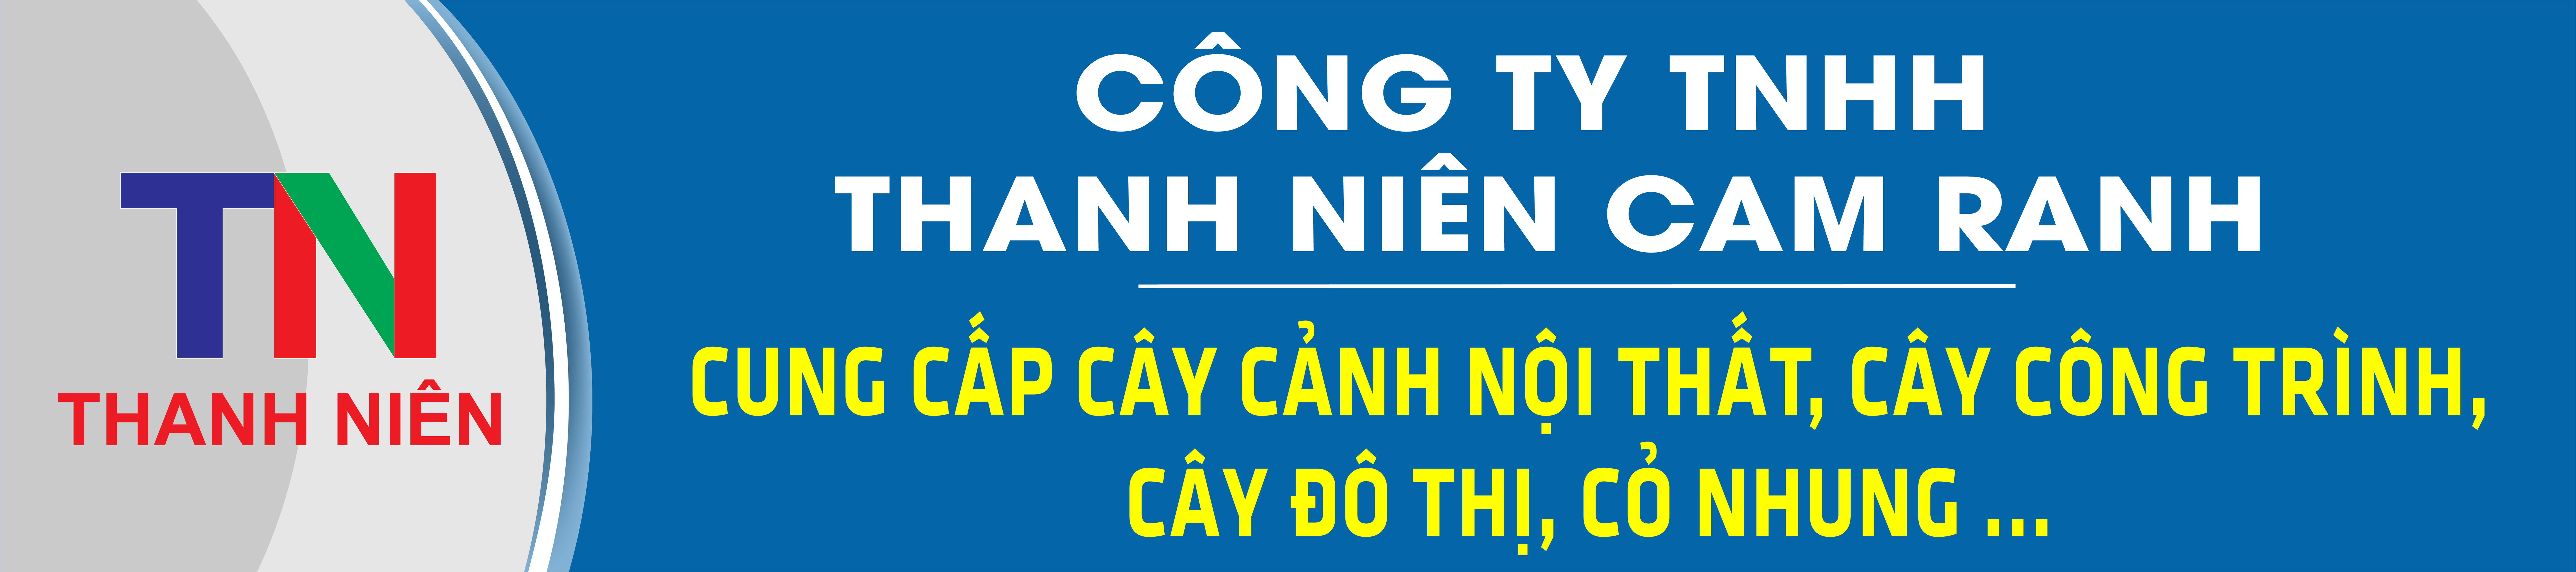 Công Ty TNHH Thanh Niên Cam Ranh